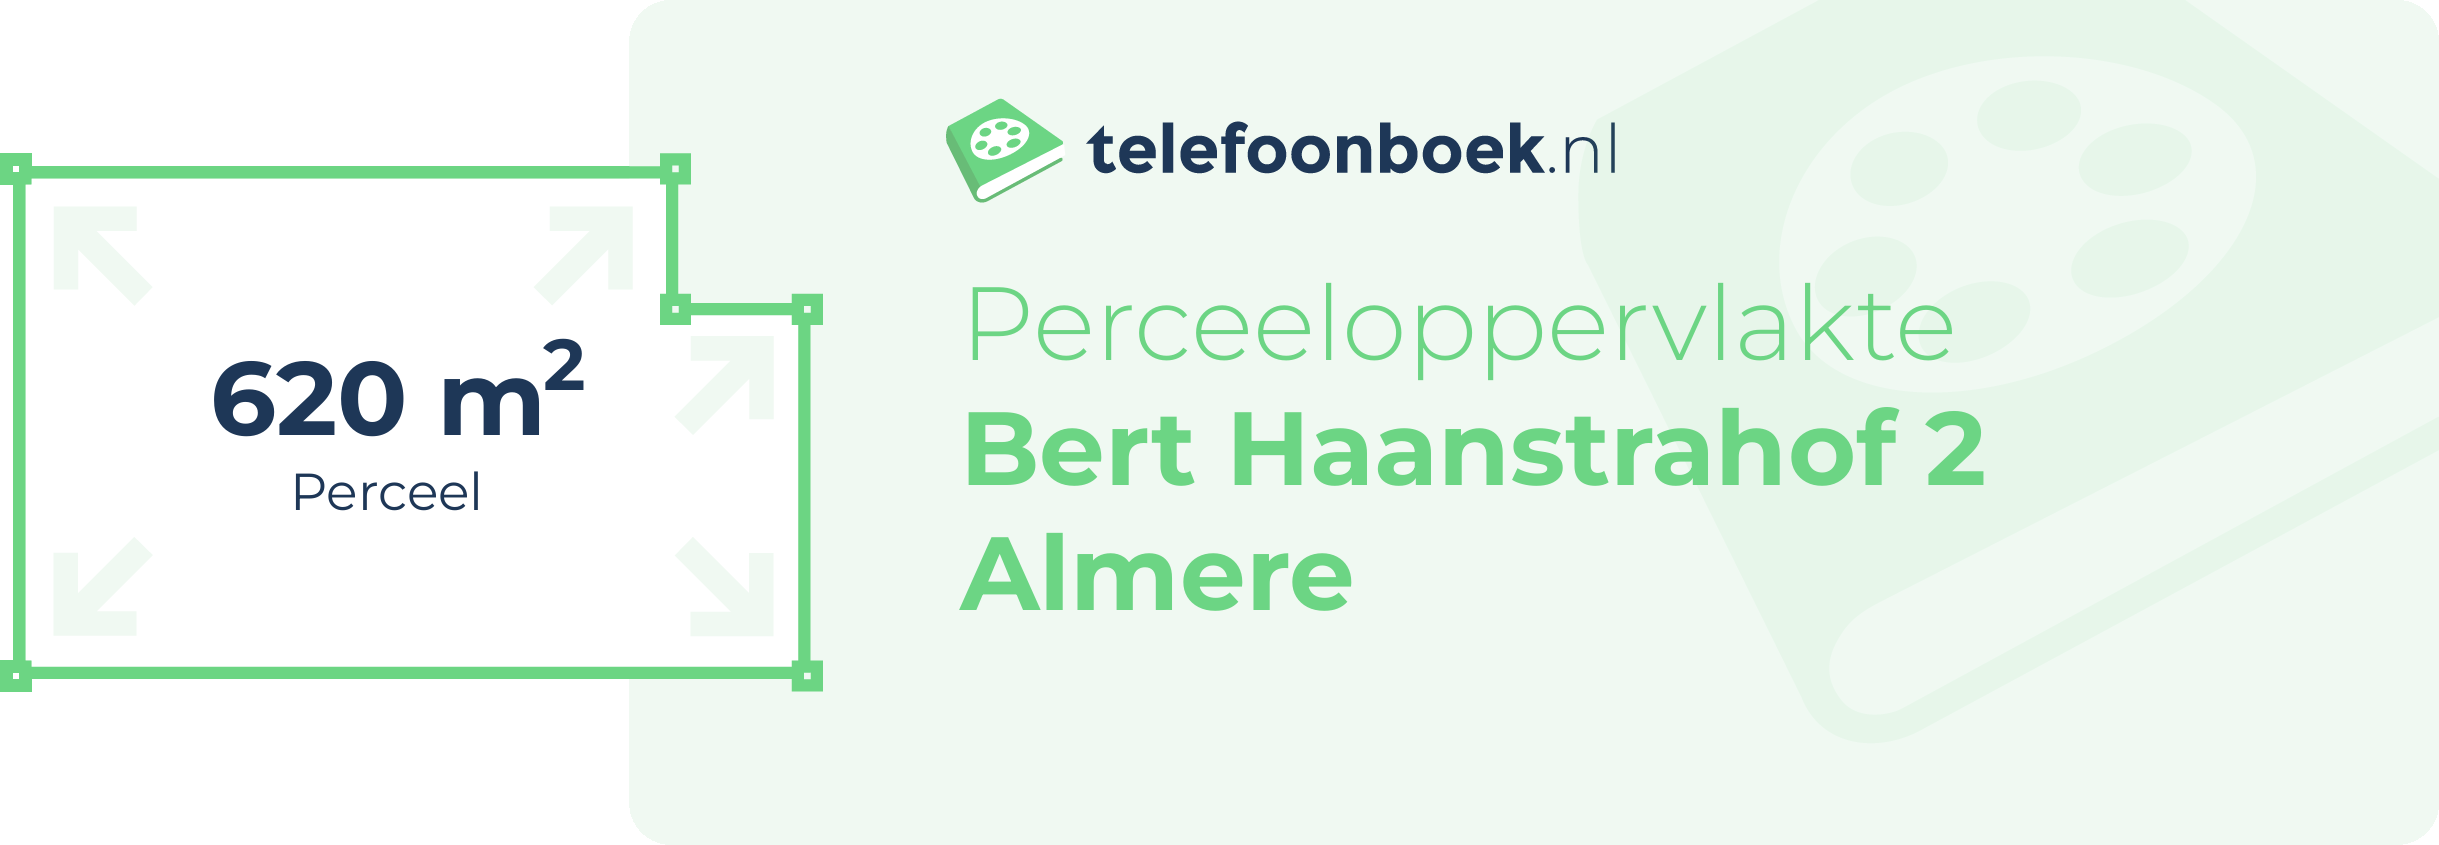 Perceeloppervlakte Bert Haanstrahof 2 Almere